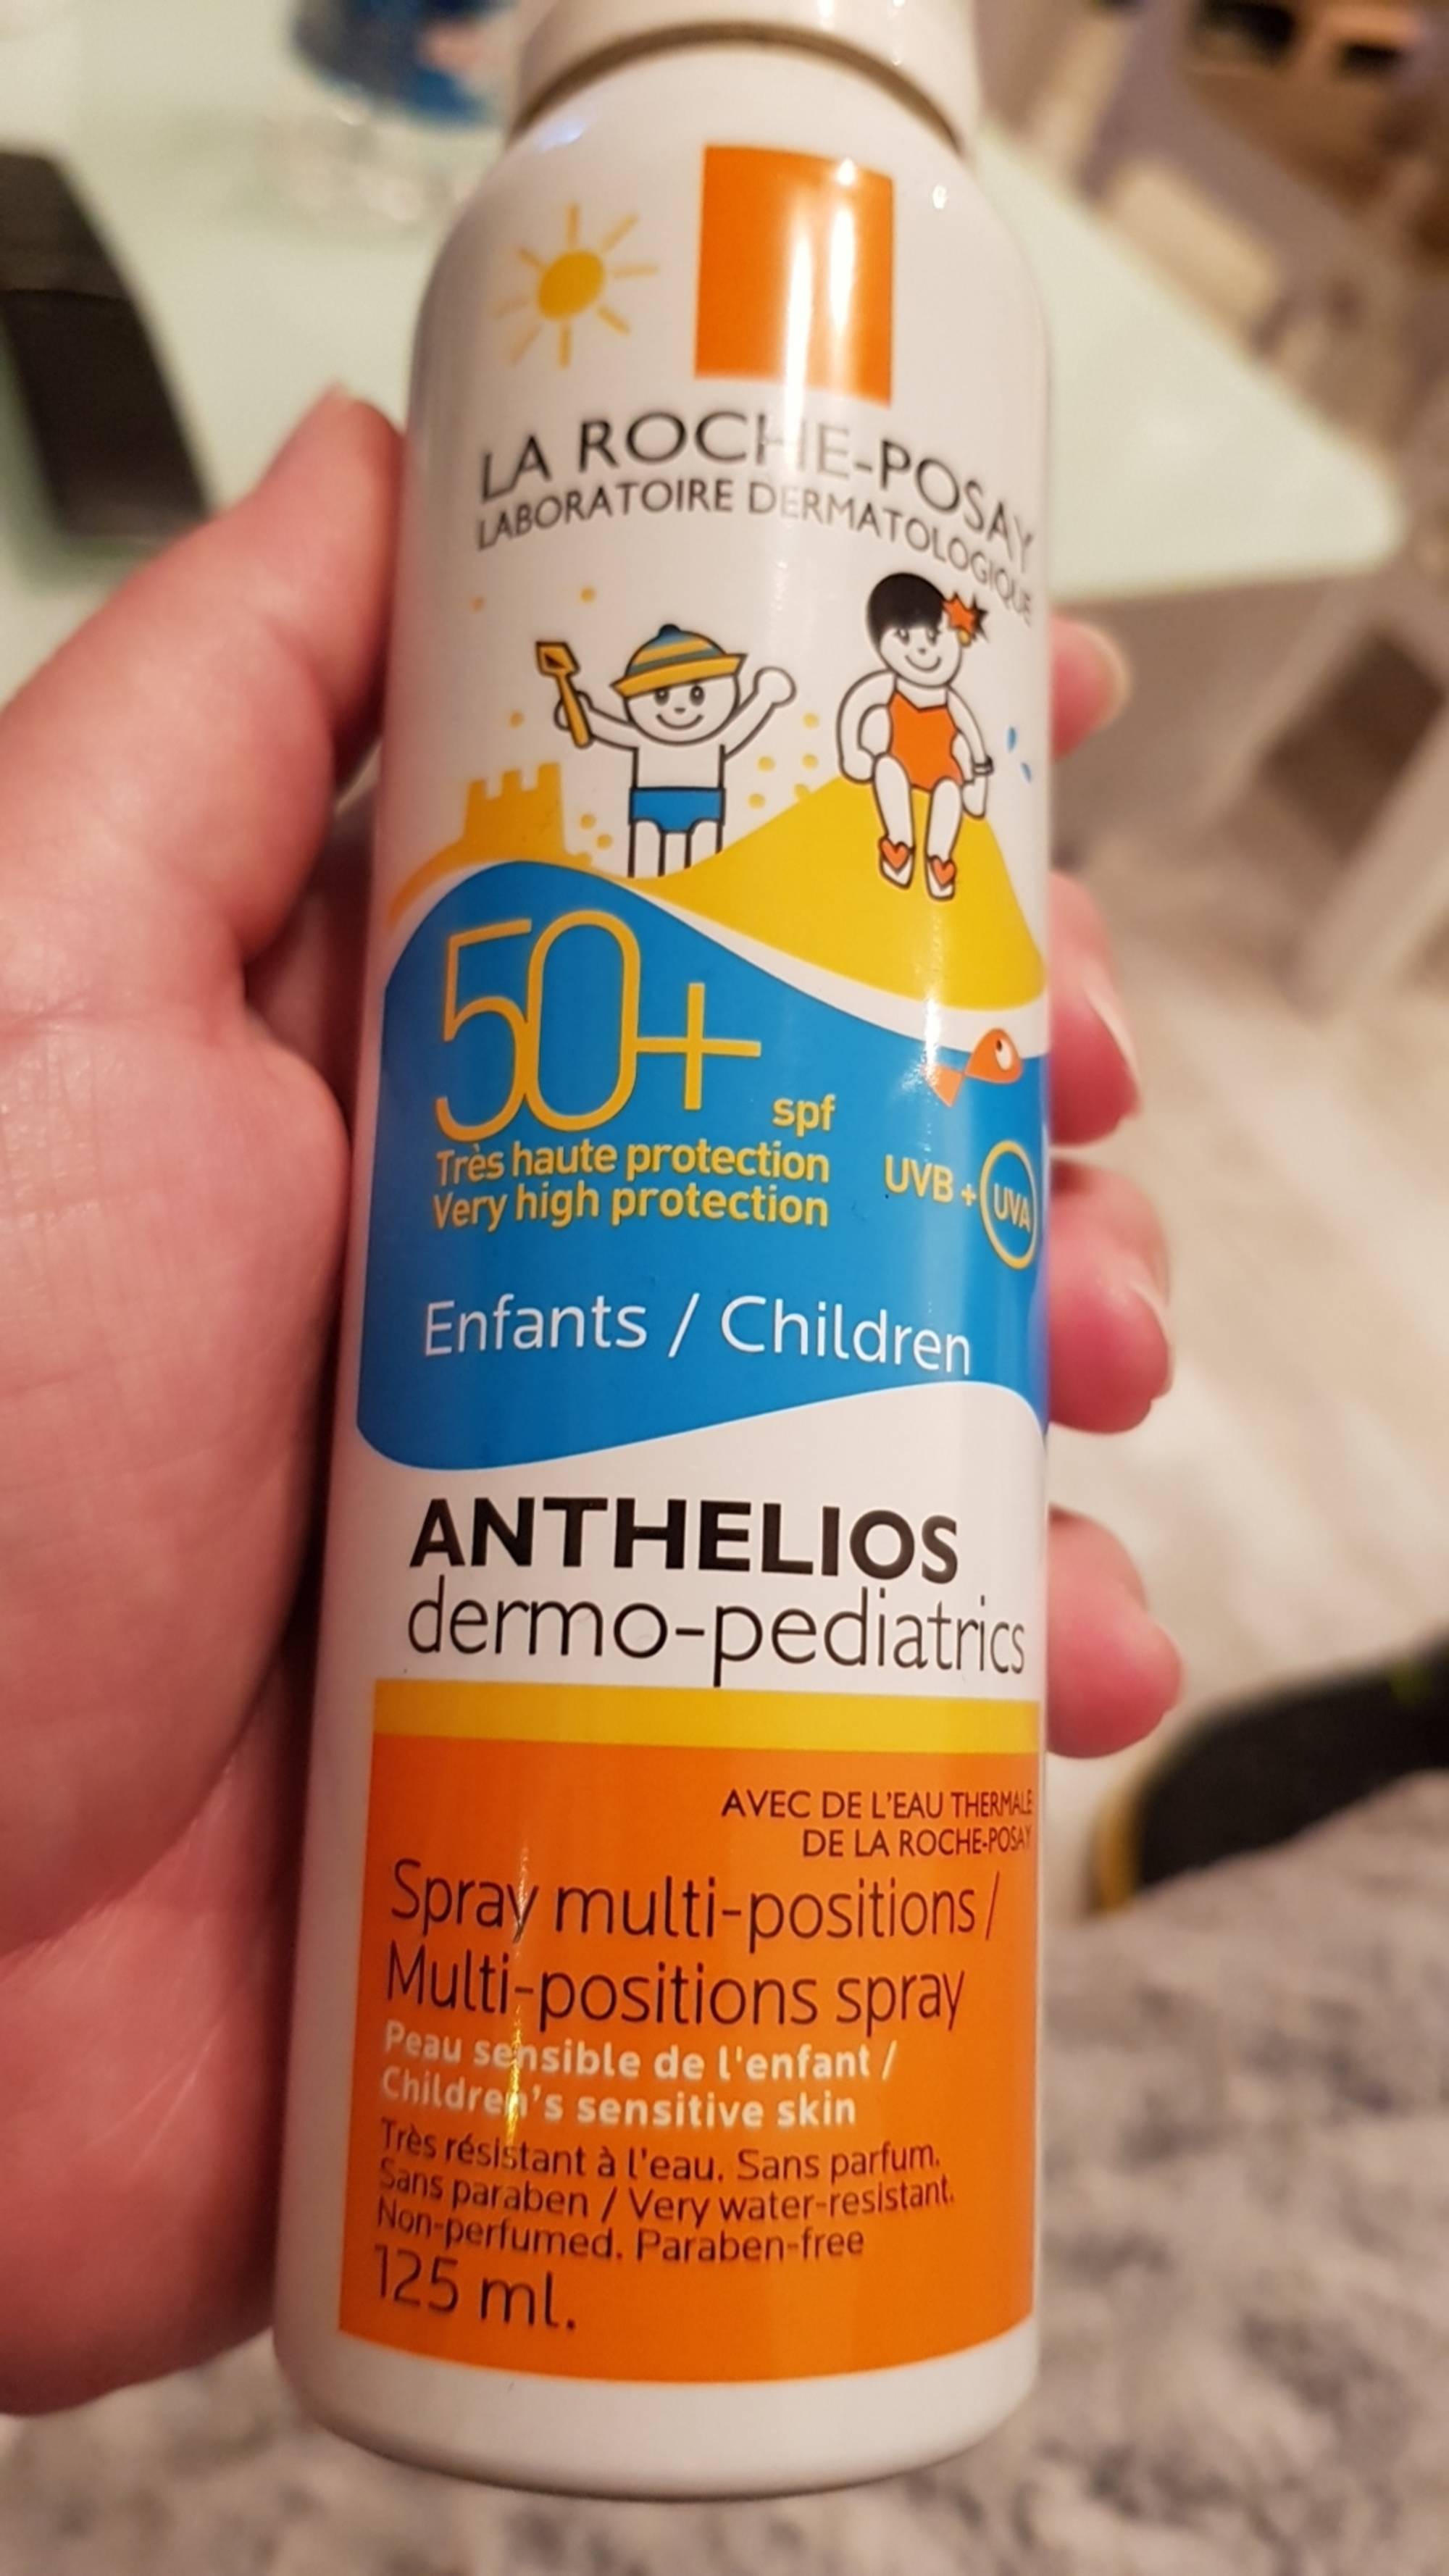 LA ROCHE-POSAY - Anthelios - Dermo-Pediatrics 50+ Spf Spray Multi-Position